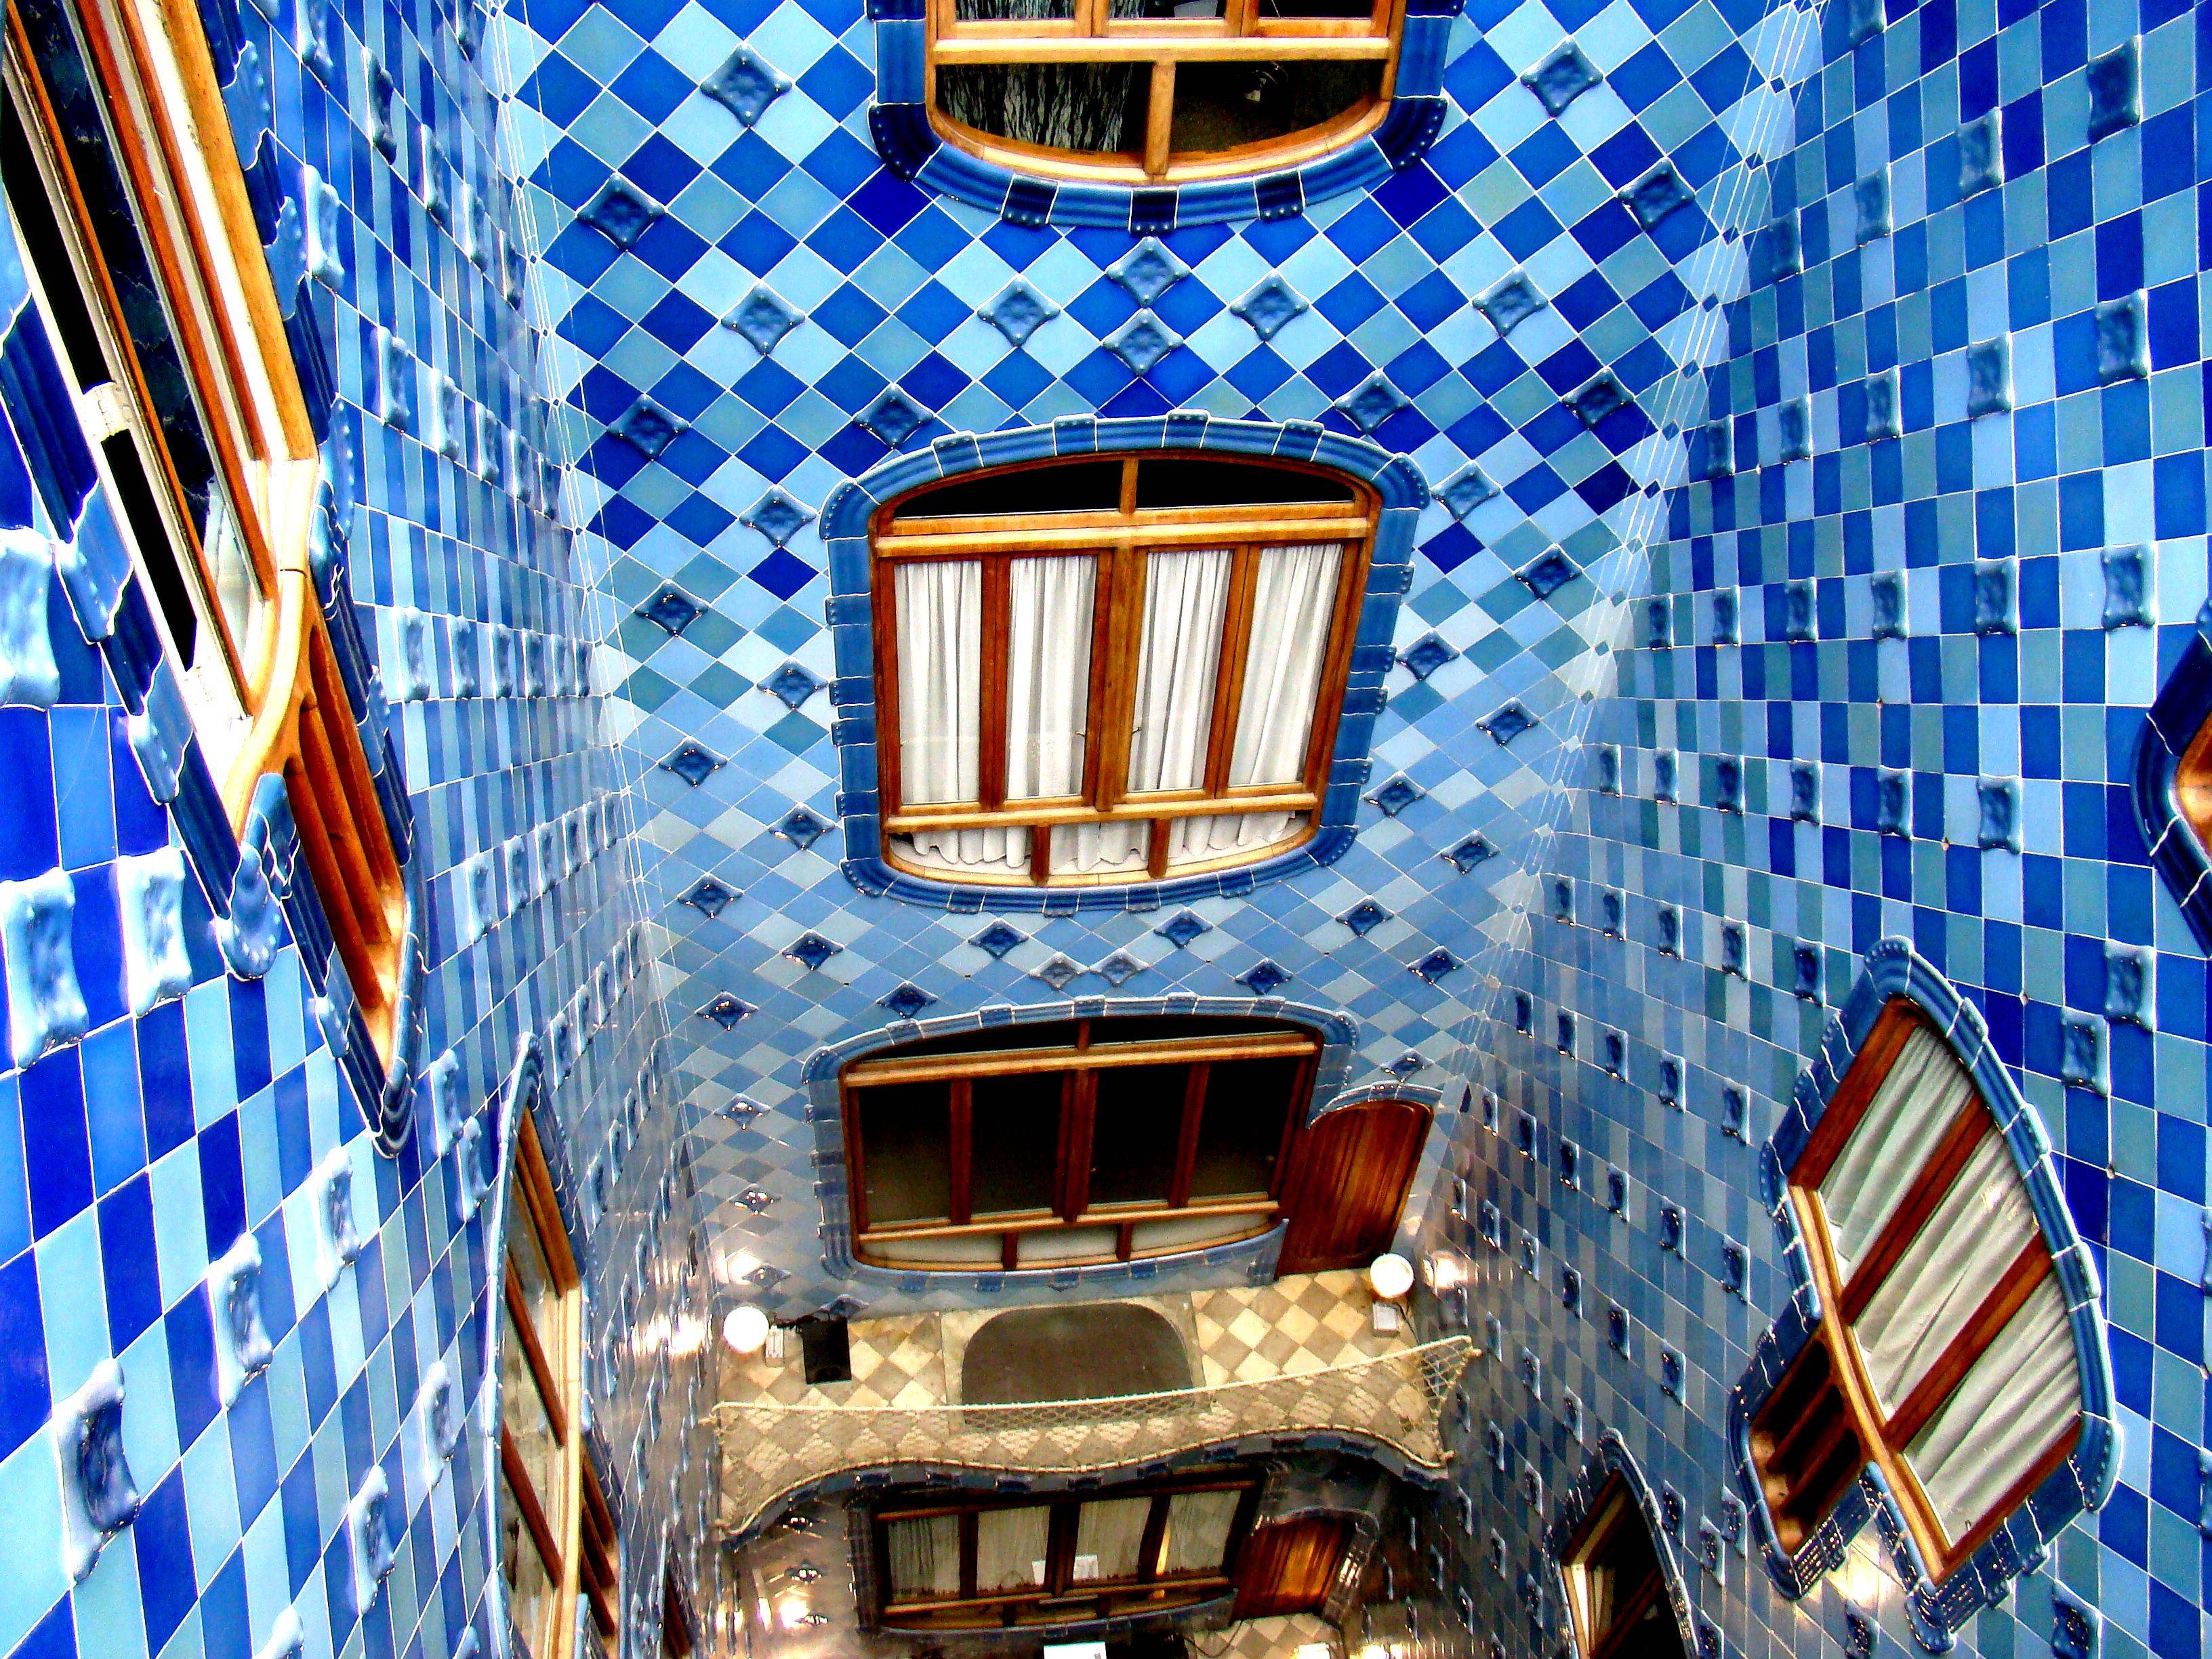 Дом бальо в барселоне (casa batlló) | дороги мира